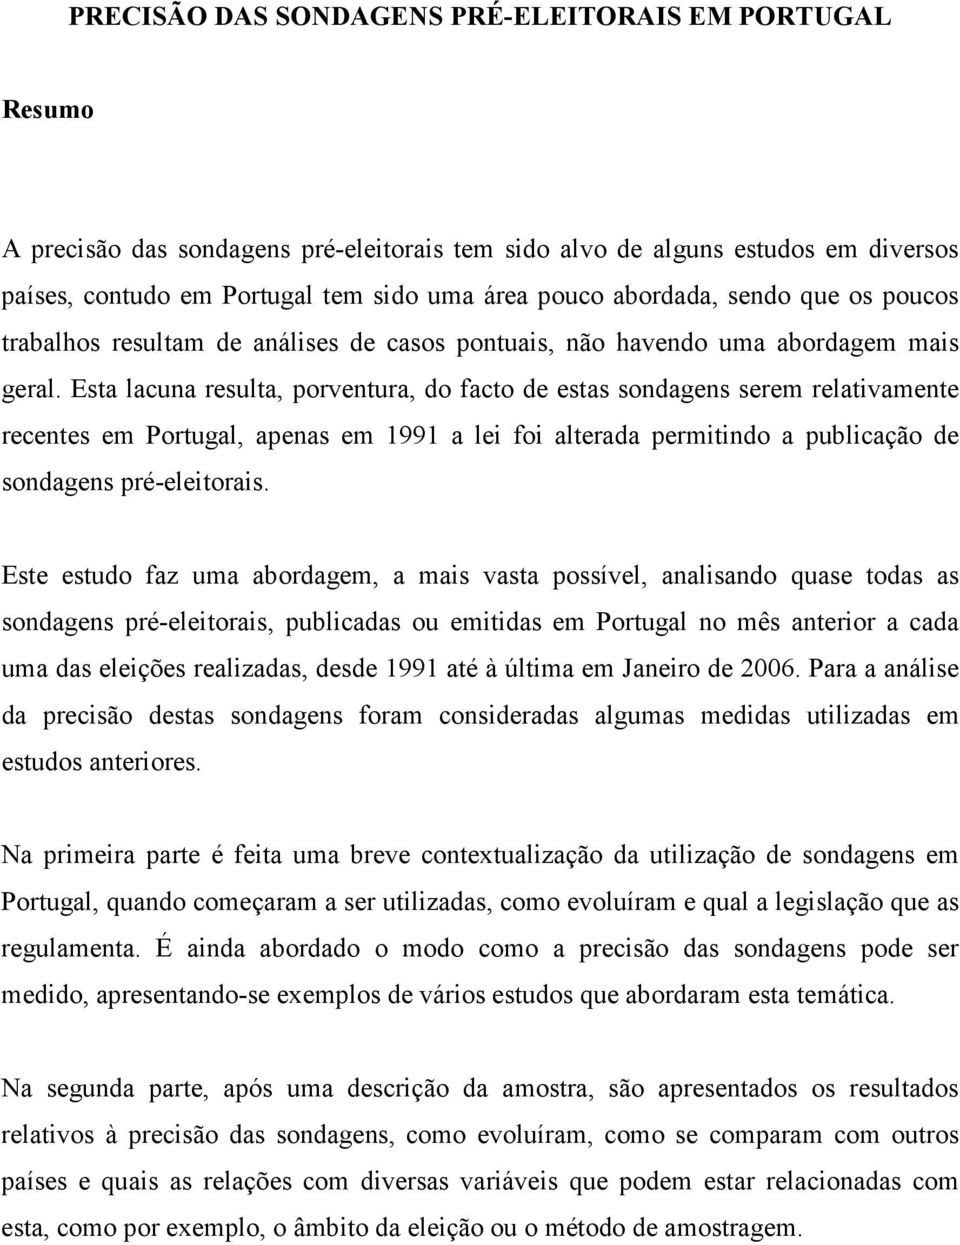 Esta lacuna resulta, porventura, do facto de estas sondagens serem relativamente recentes em Portugal, apenas em 1991 a lei foi alterada permitindo a publicação de sondagens pré-eleitorais.